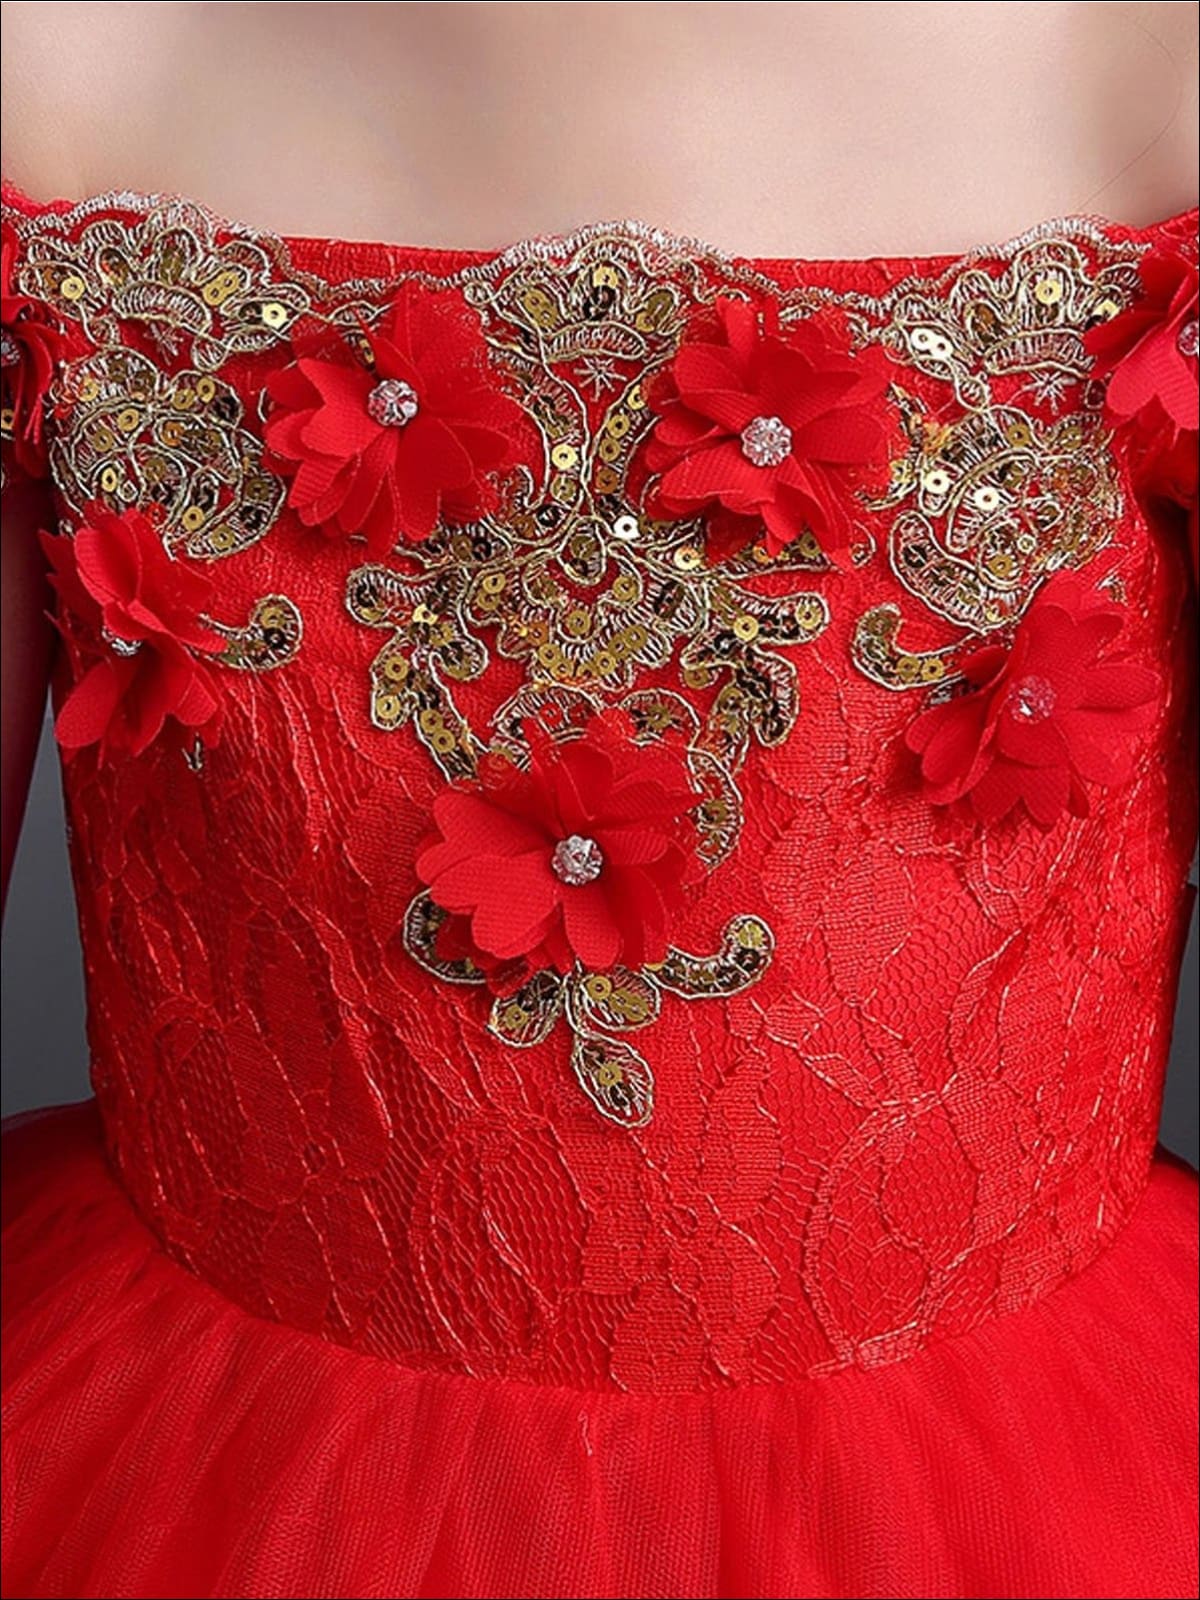 Girls Formal Dresses | Sequin Embellished Off Shoulder Princess Gown